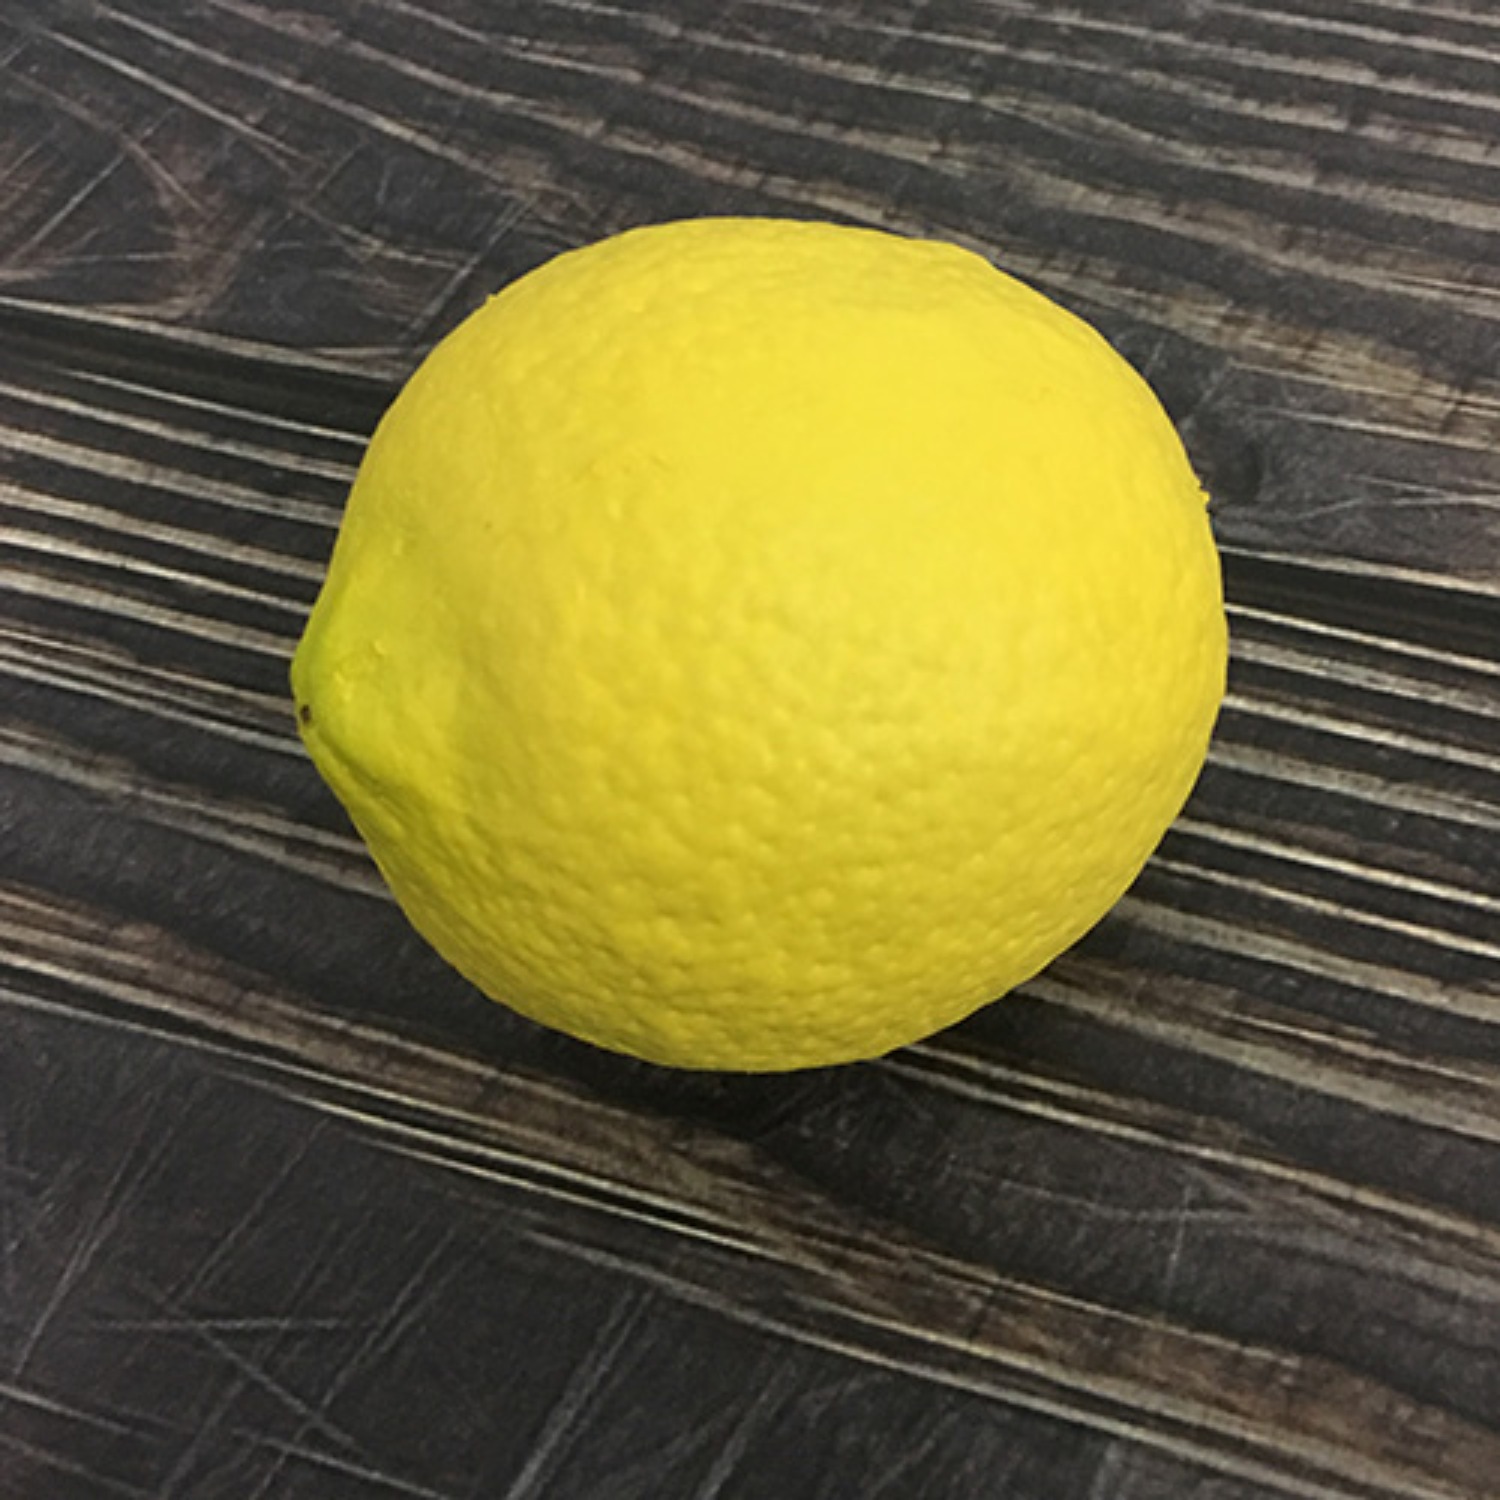 [라텍스레몬] Latex Lemon 레몬을 이용한 다양하고 재미있는 마술을 연출하실 수 있습니다.